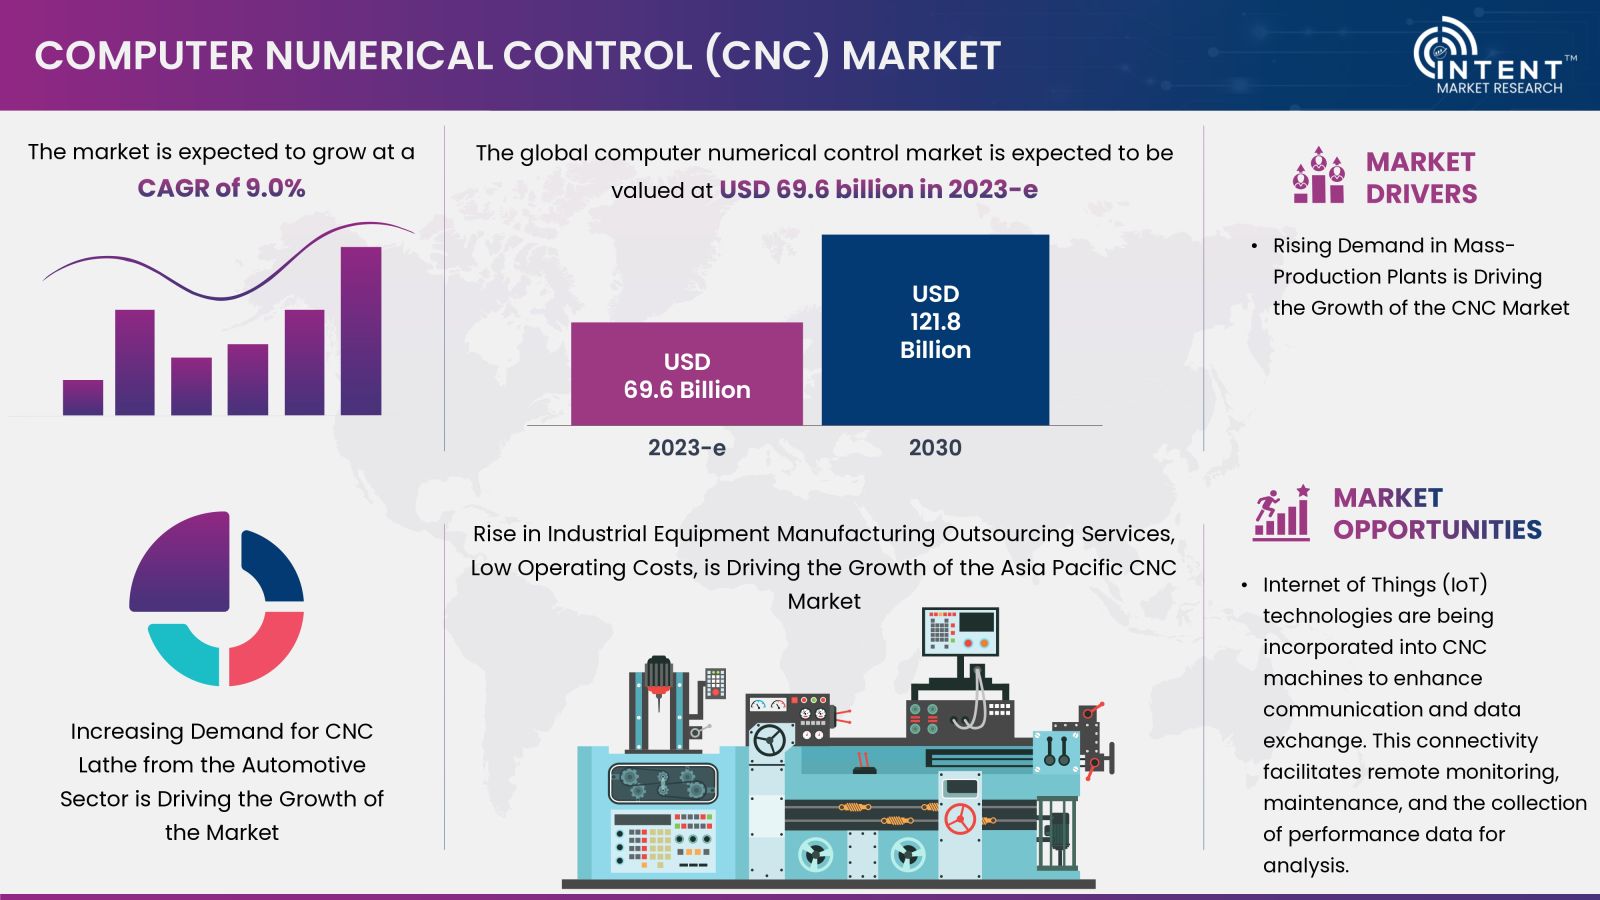 CNC Market Overview